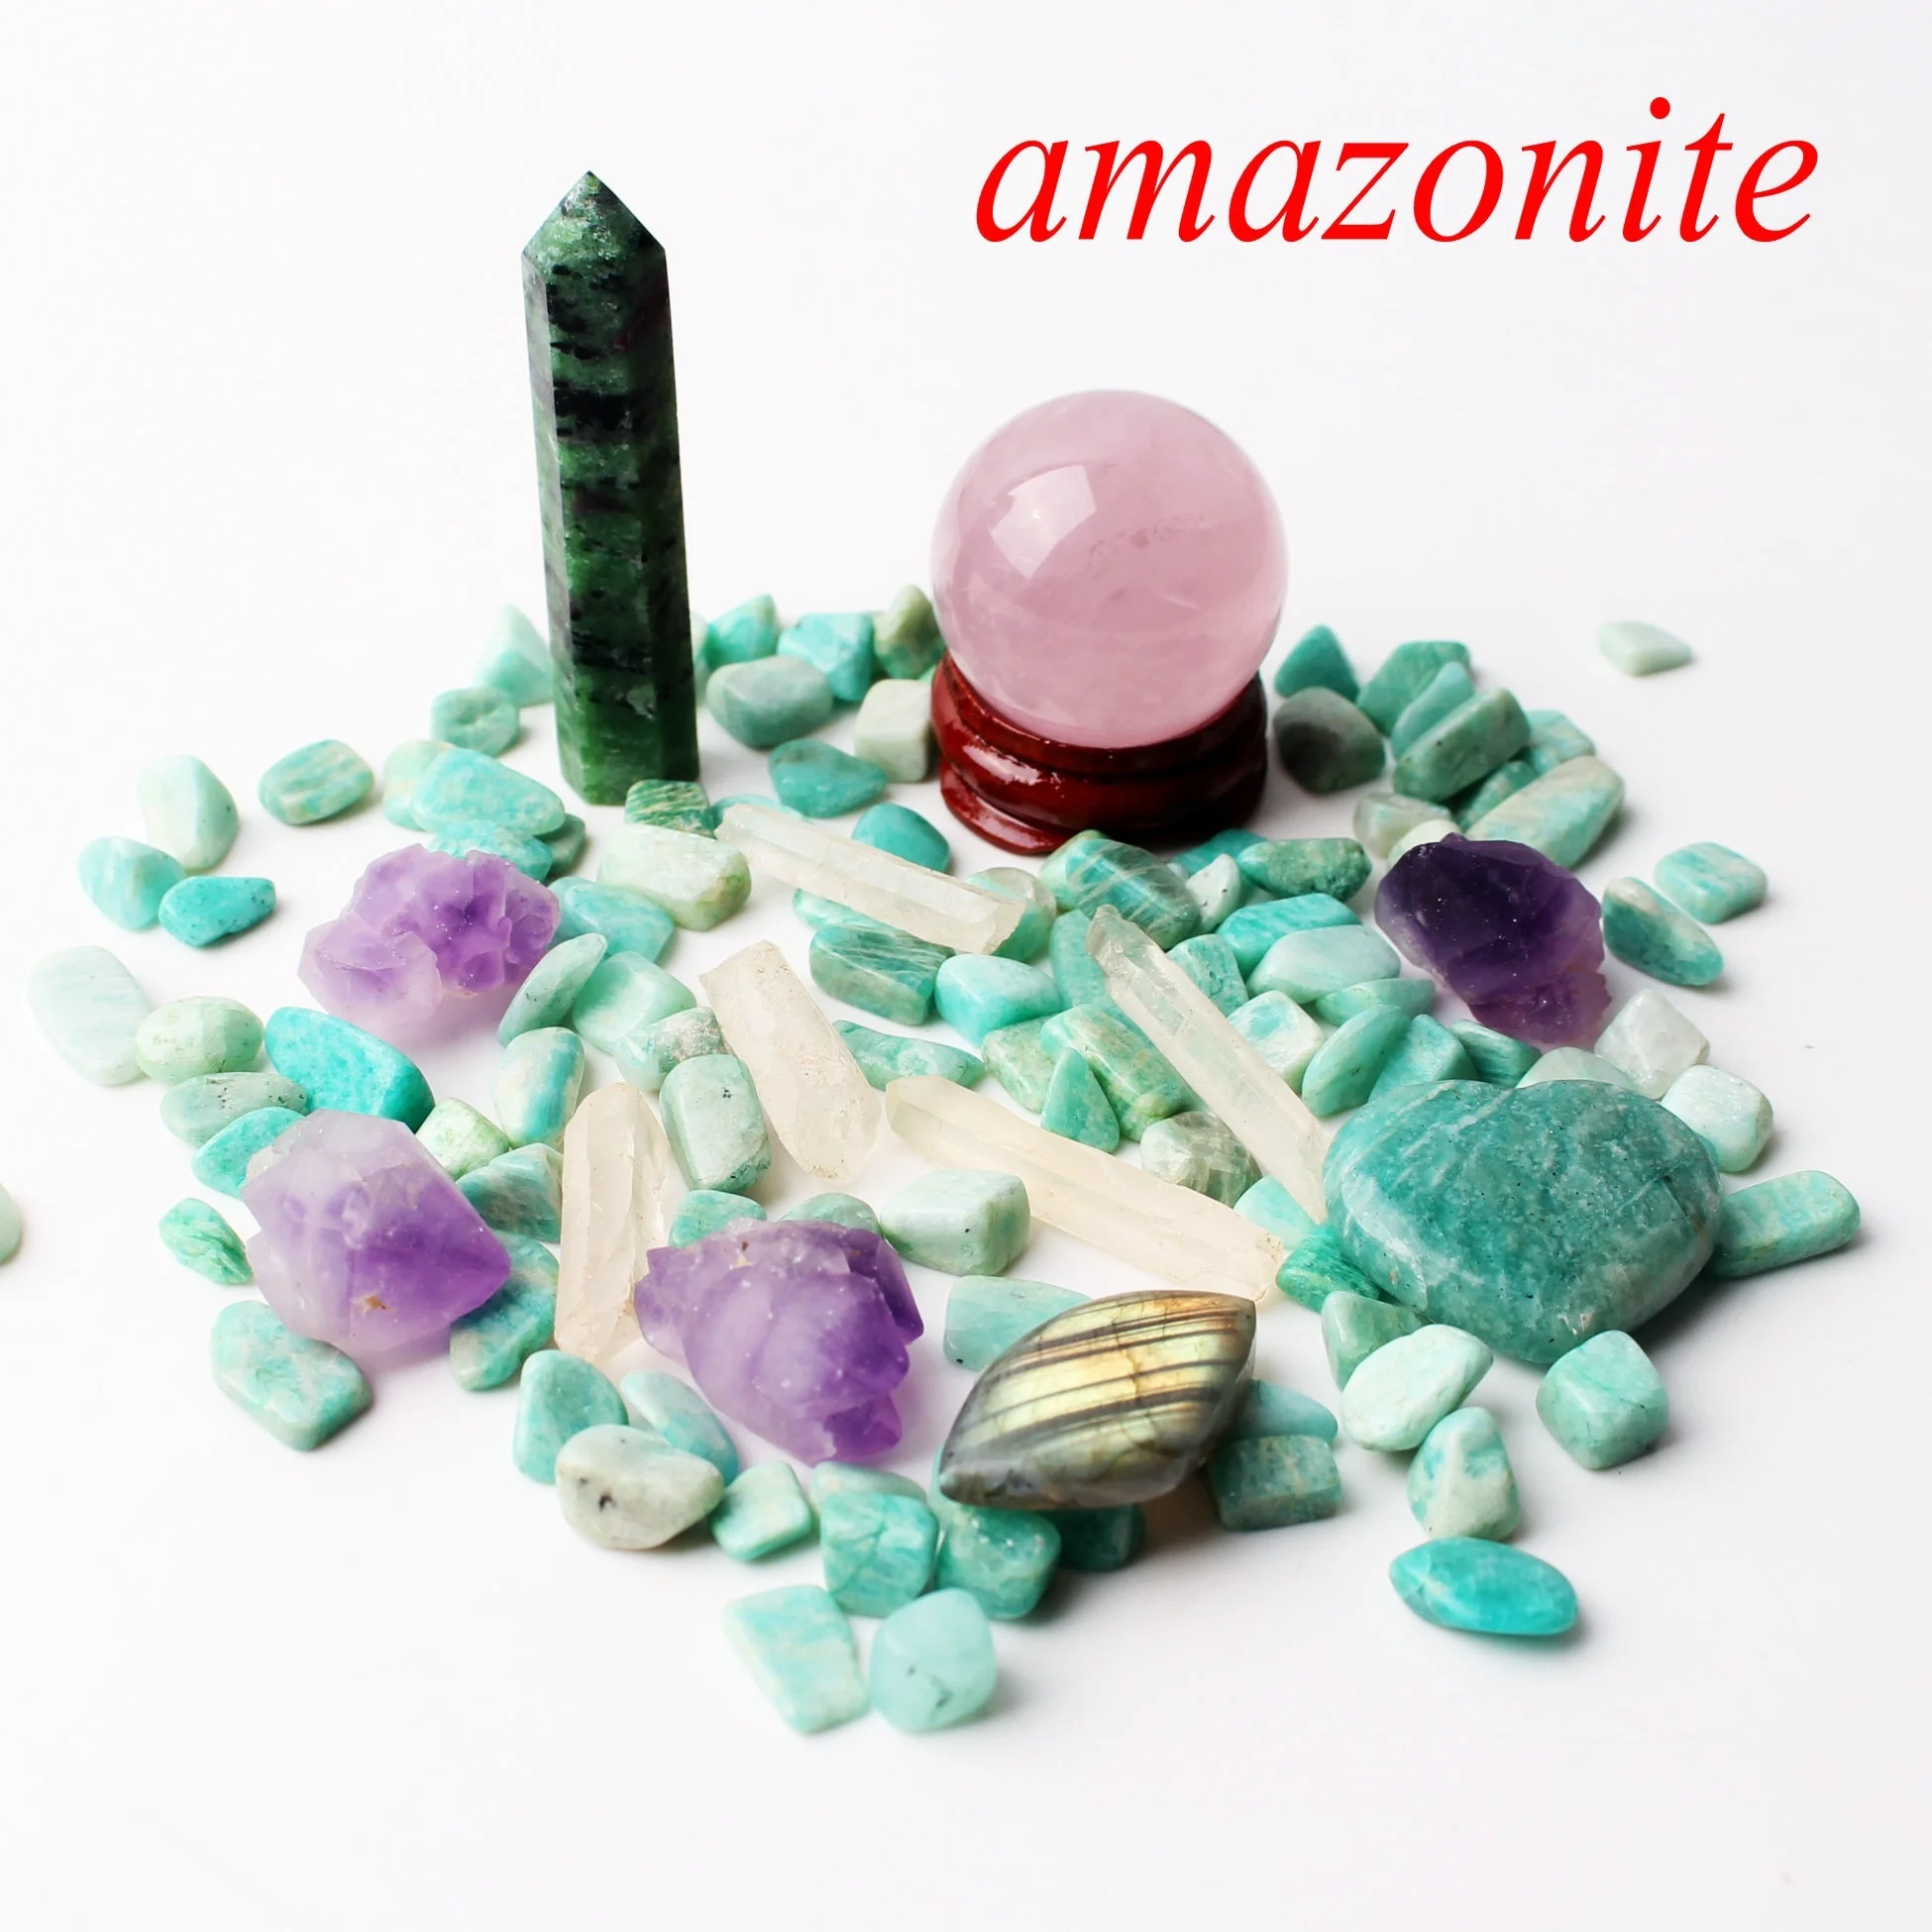 1 комплект много смешанных натуральных кристаллов обелиска шариковая палочка сердце гравий минералы образец рейки целебная домашняя декоративная статуэтка - Цвет: Amazonite